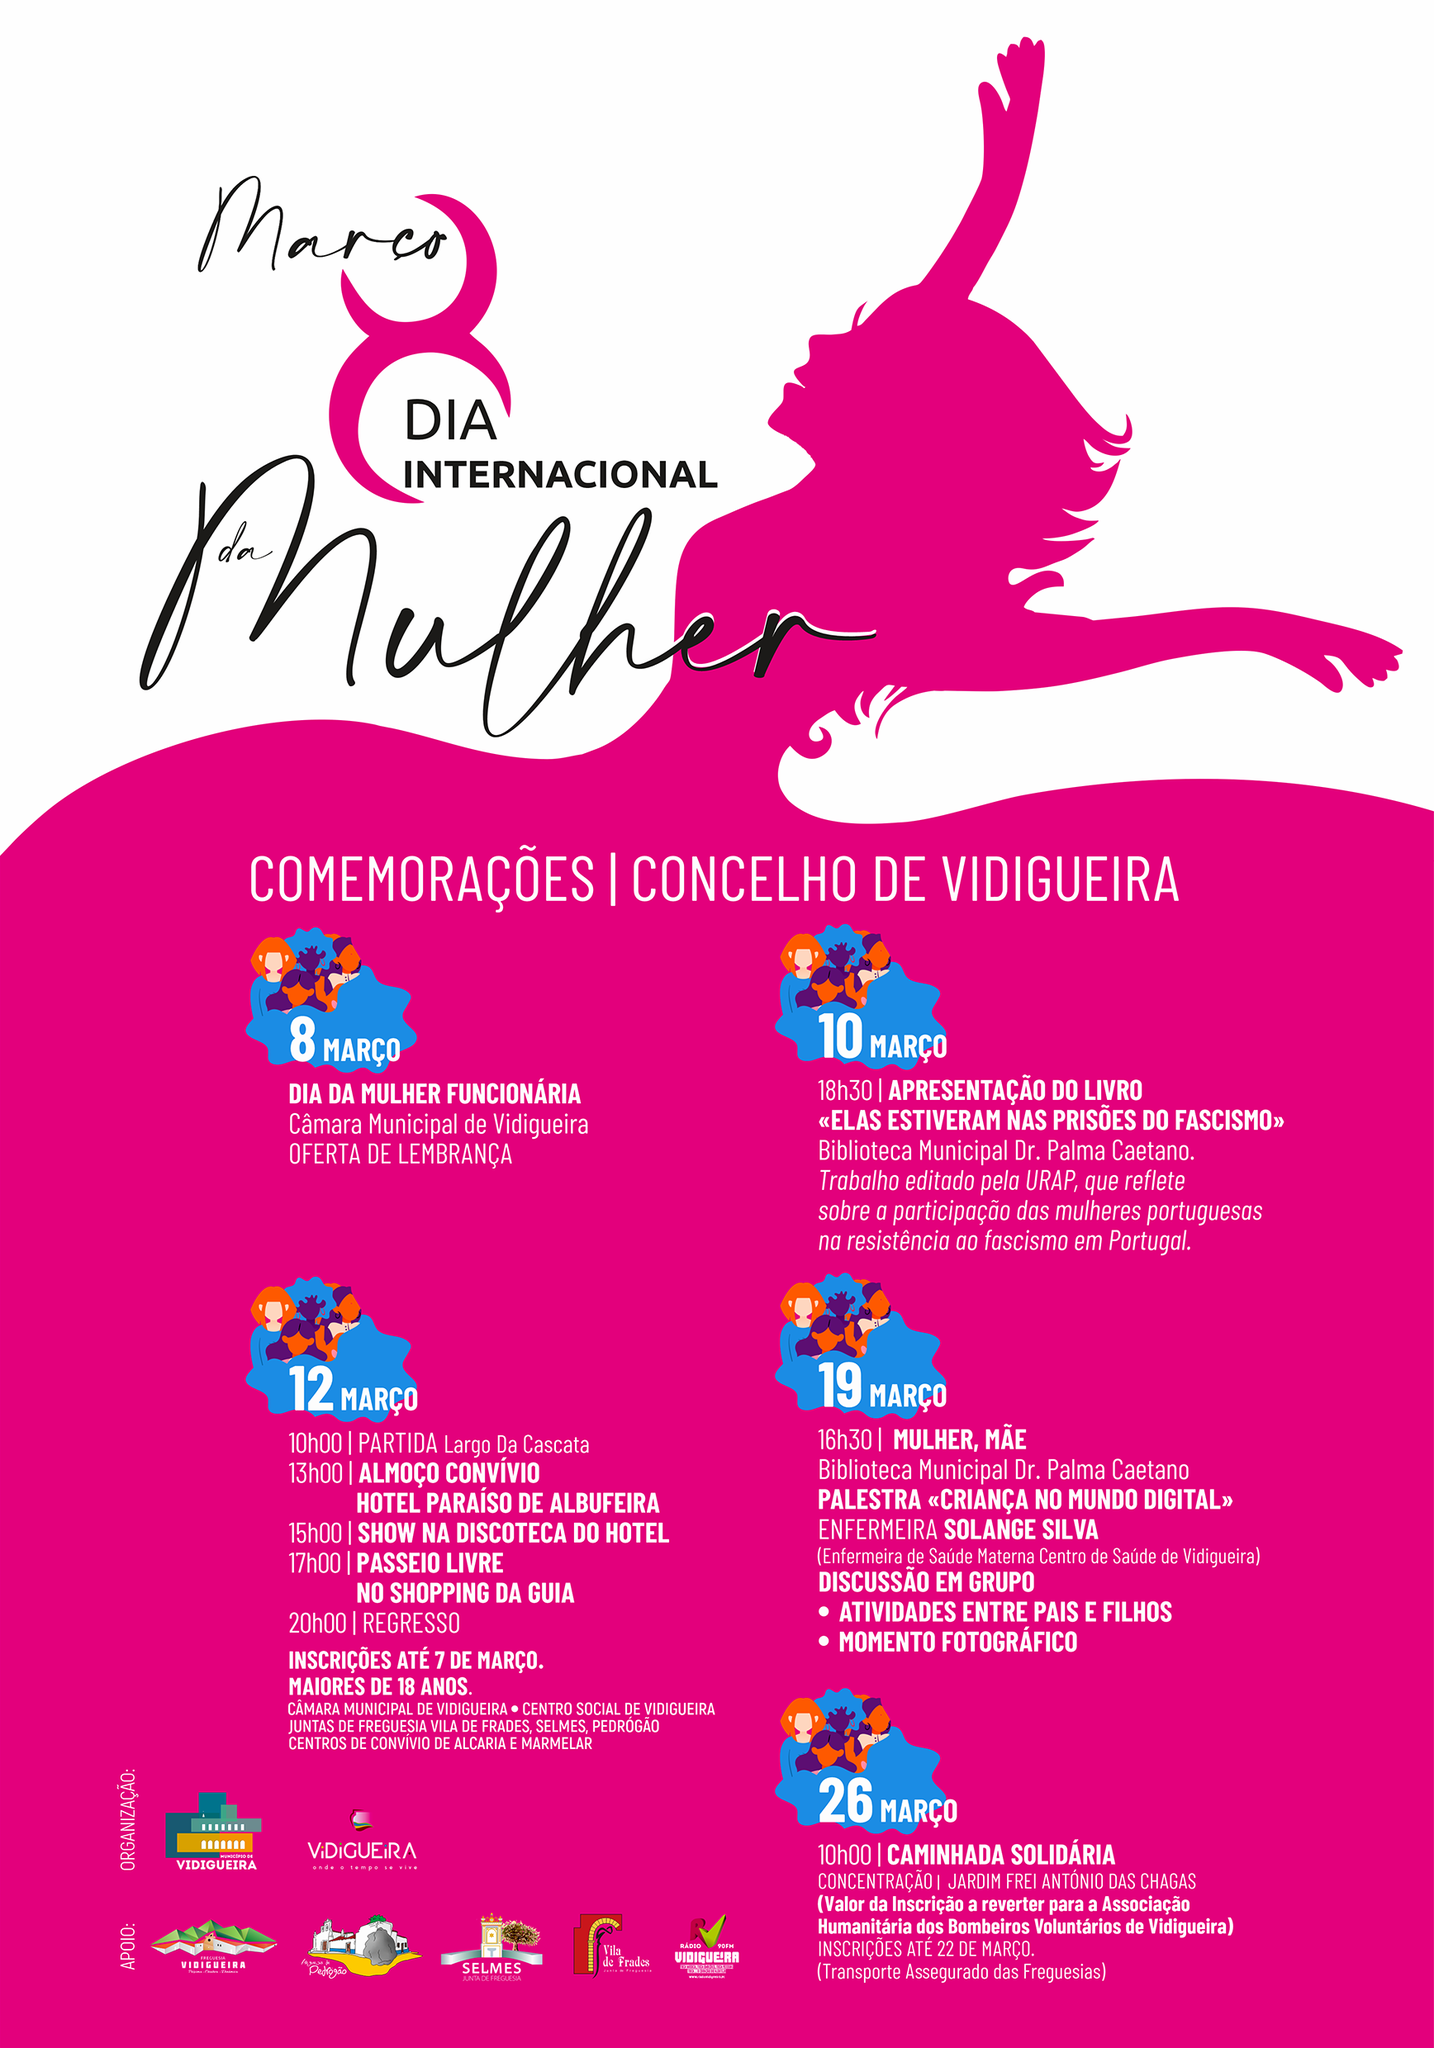 Comemorações do Dia Internacional da Mulher no Município de Vidigueira